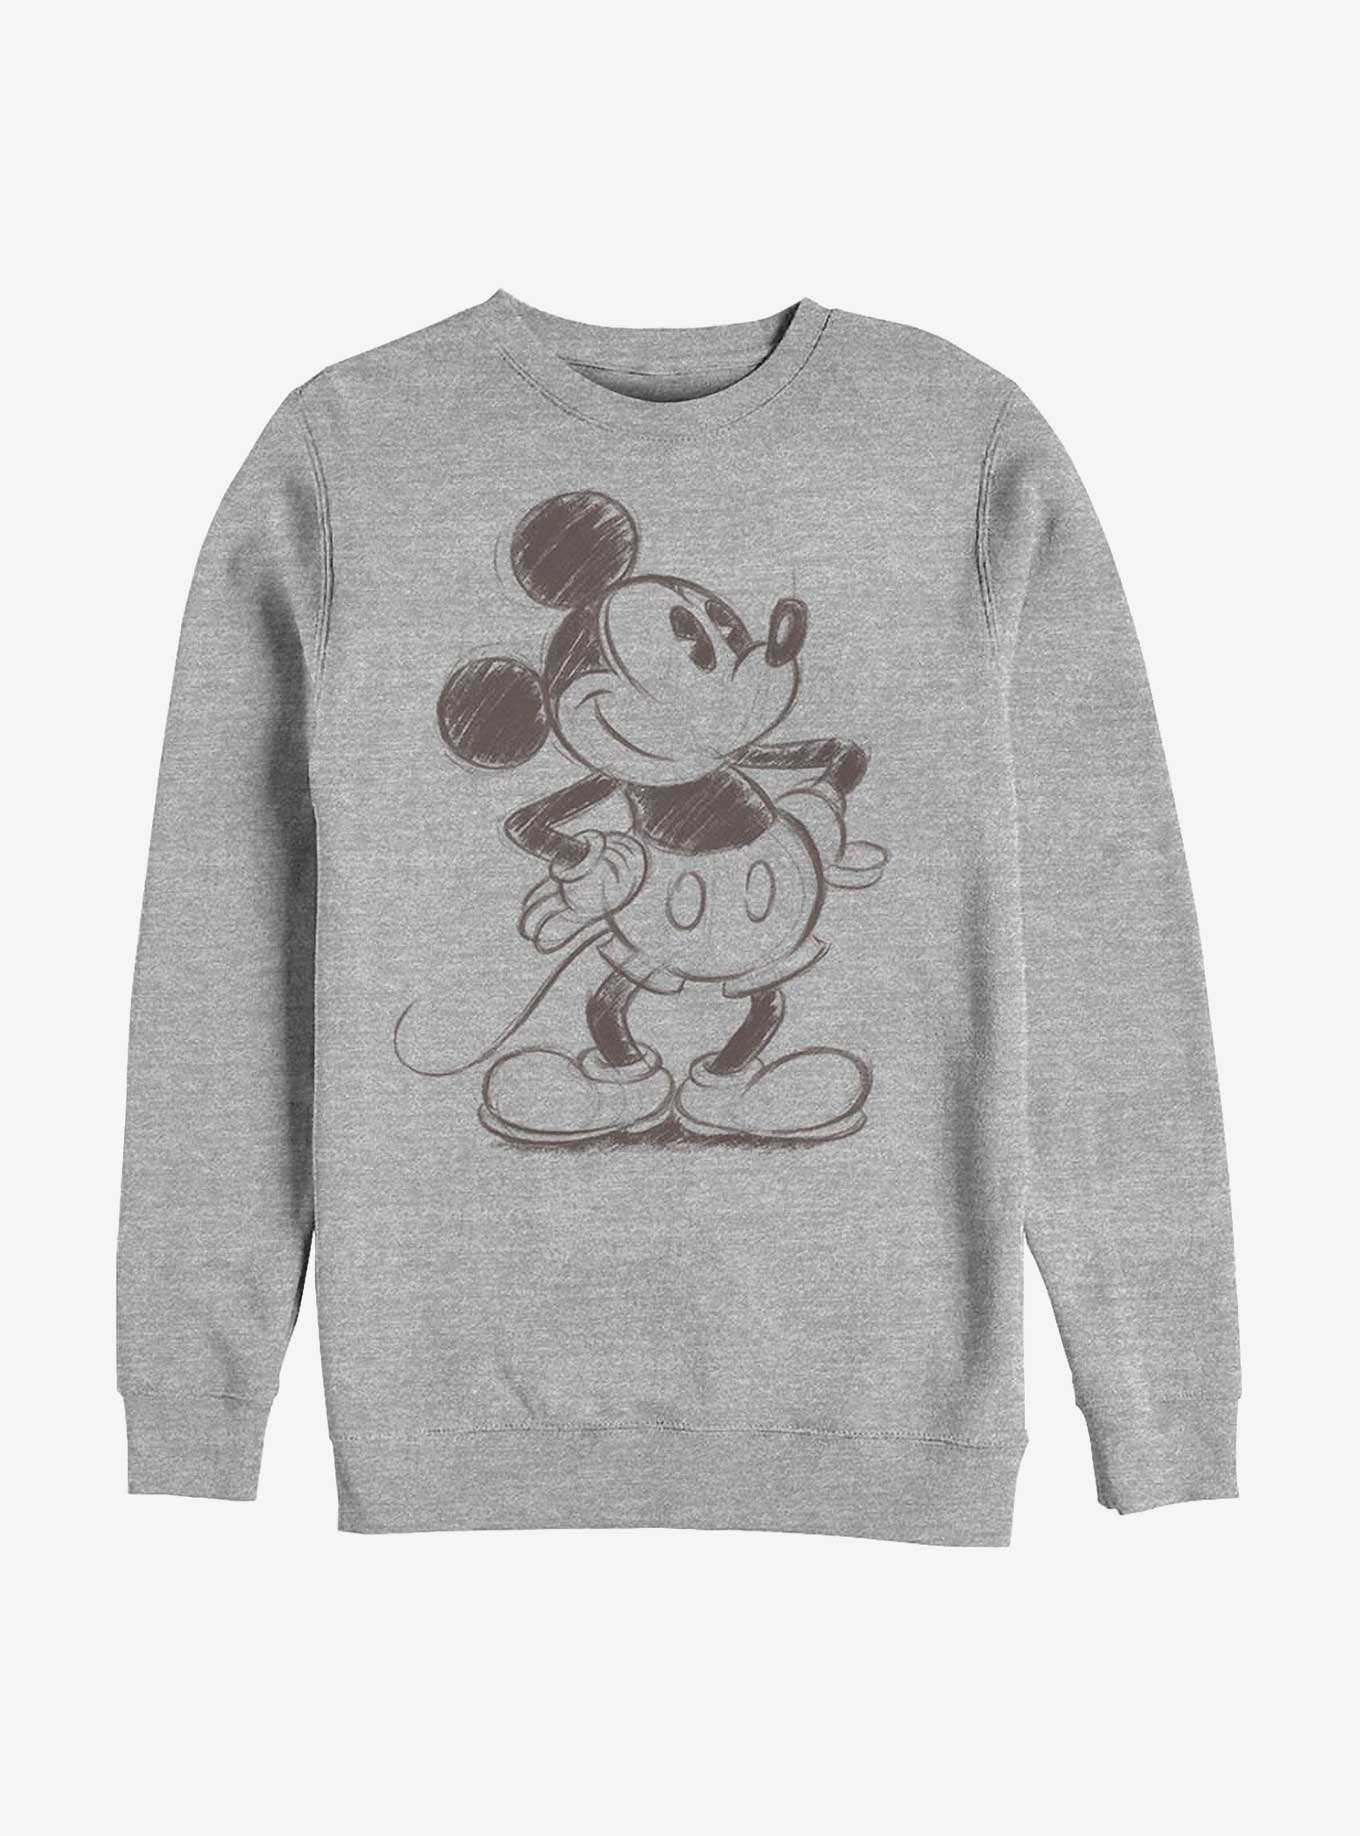 Disney Mickey Mouse Sketched Mickey Crew Sweatshirt, , hi-res